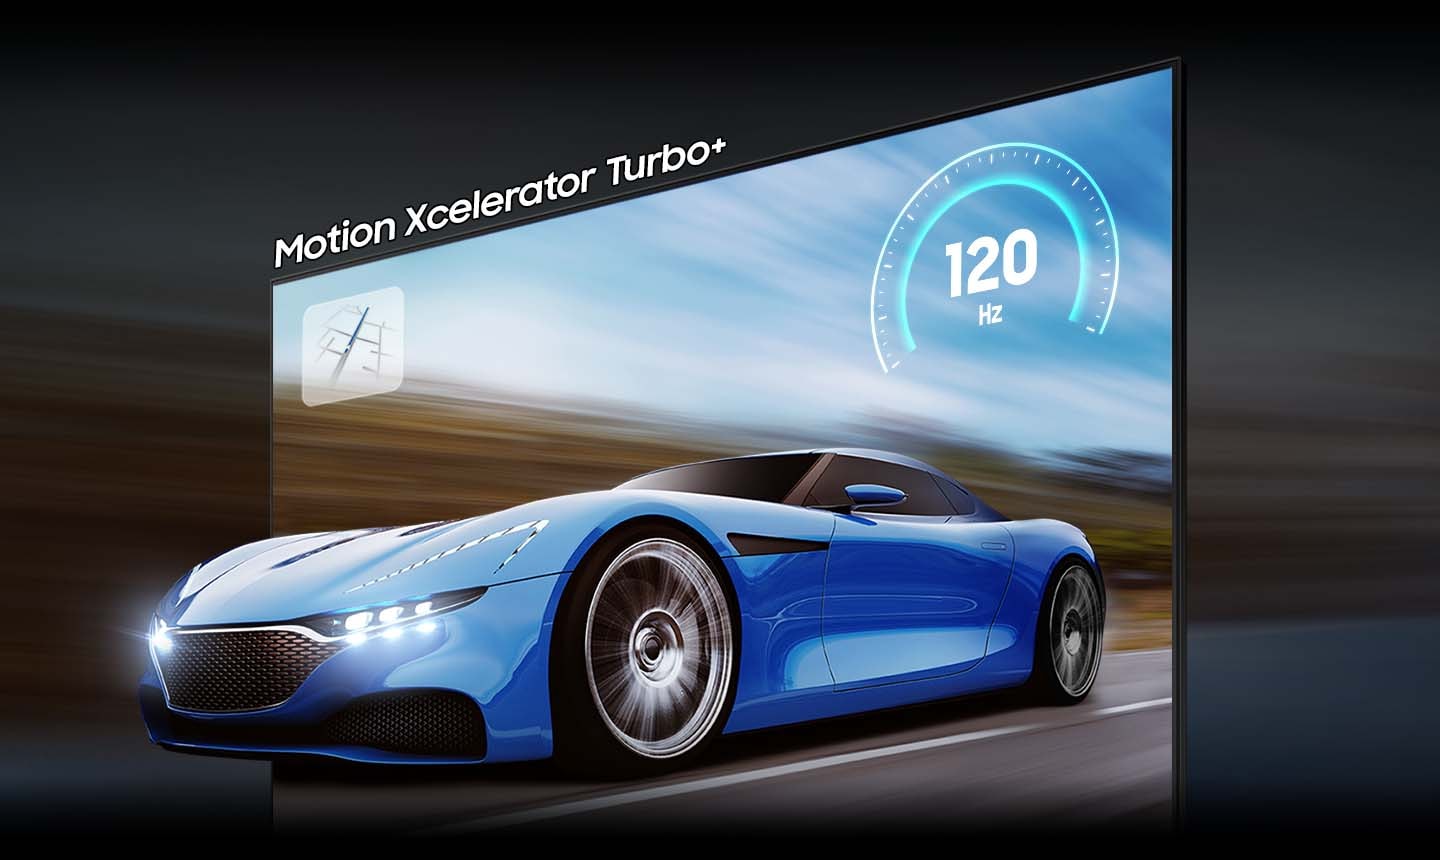 Благодаря технологии motion xcelerator turbo + синяя машина на экране телевизора на QLED-телевизоре выглядит четче и заметнее, чем на обычном телевизоре. На дисплее отображается частота 120 Гц.